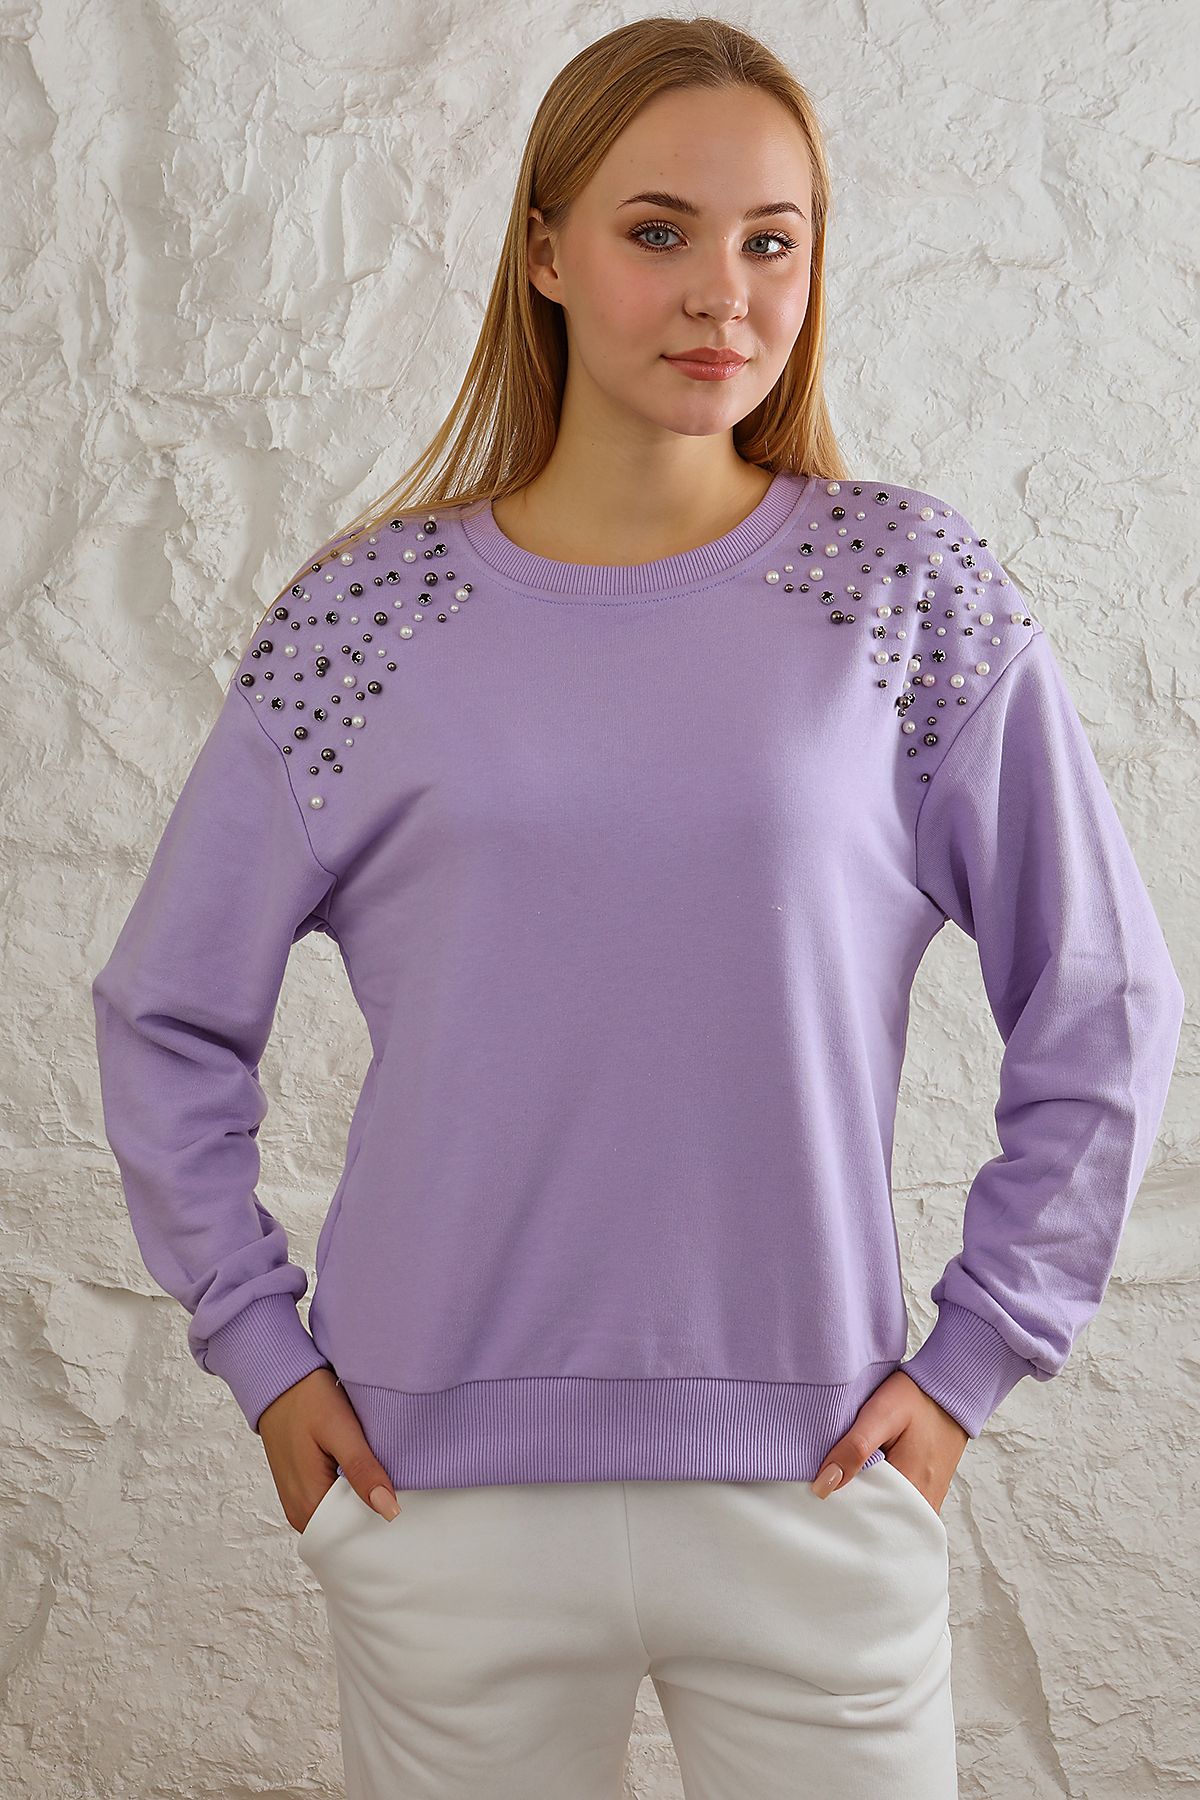 Avones Kadın Rahat Kalıp Omuzları Inci Düğme Detaylı Sweatshirt Lila